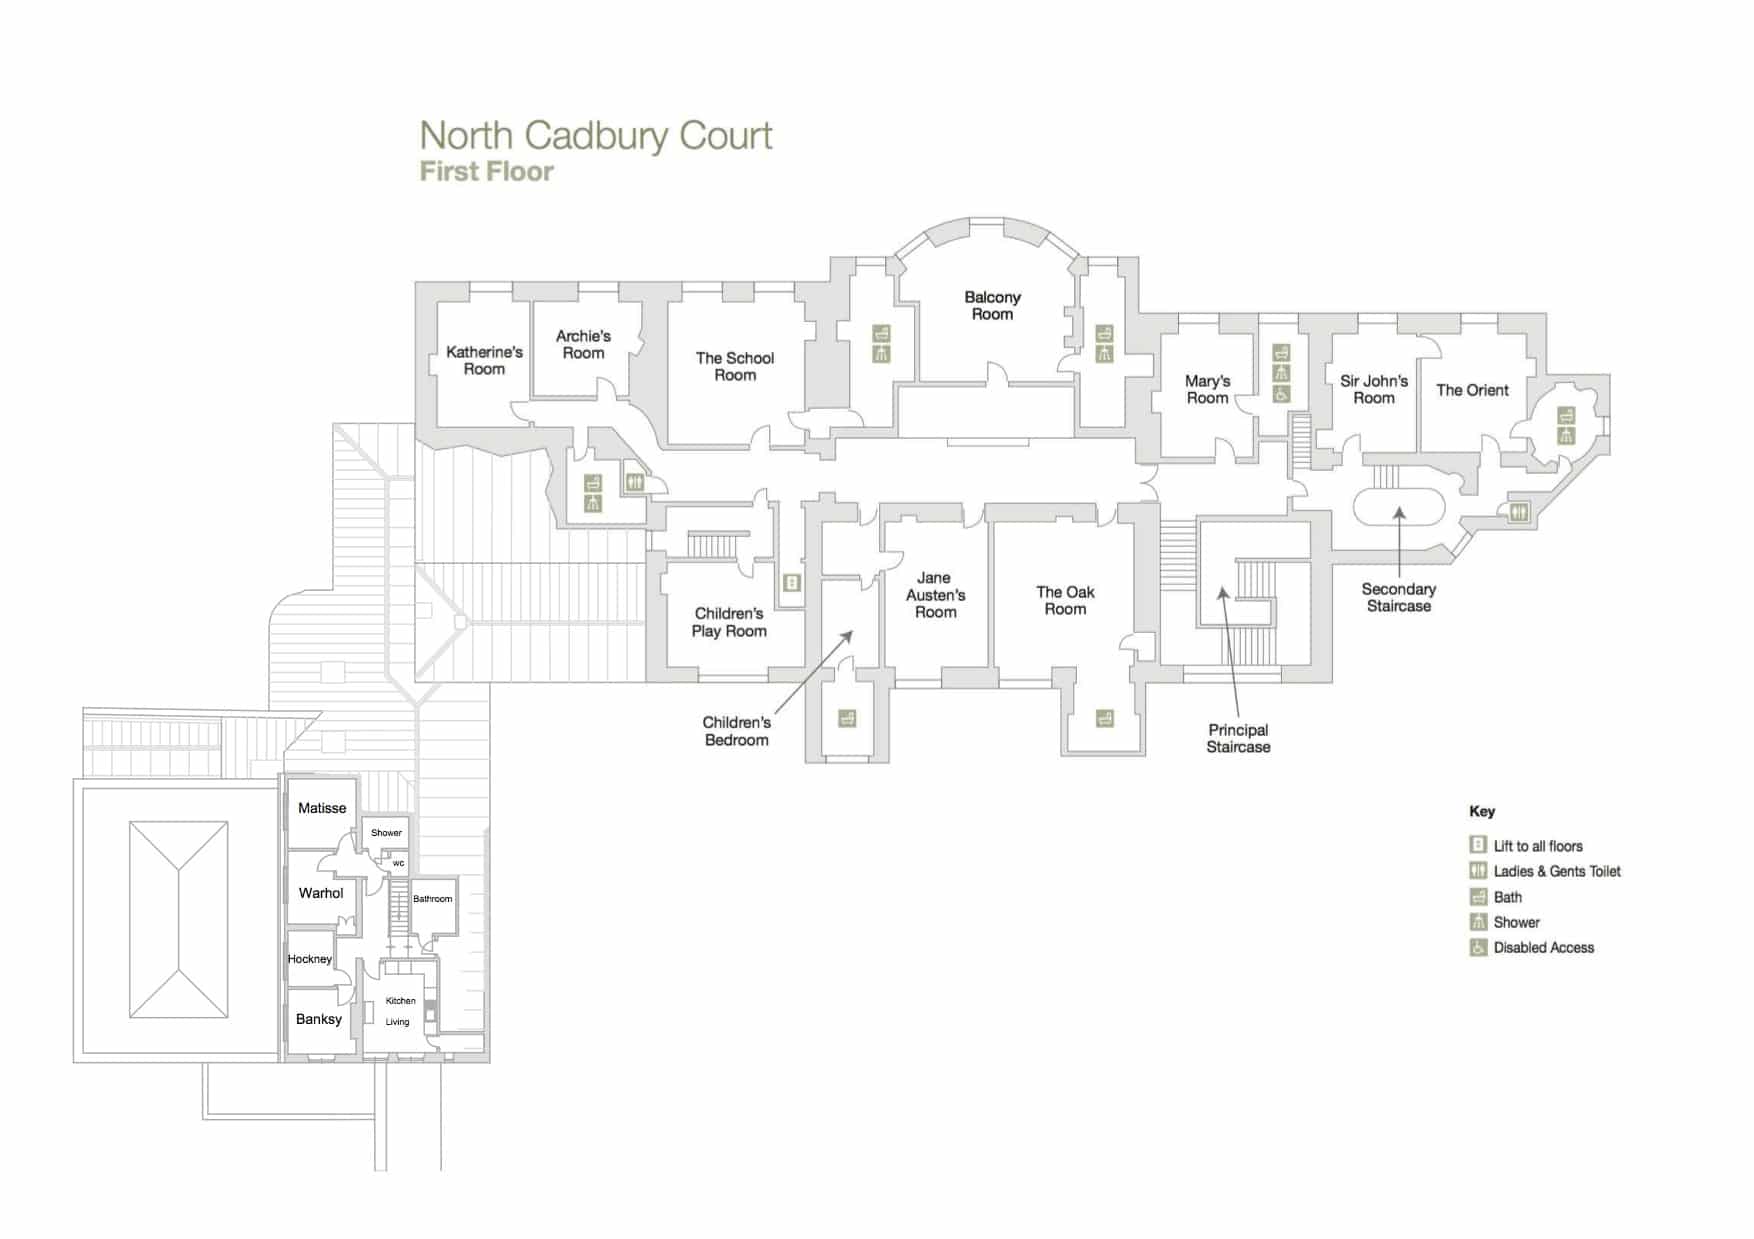 Floor Plan First Floor - North Cadbury Court